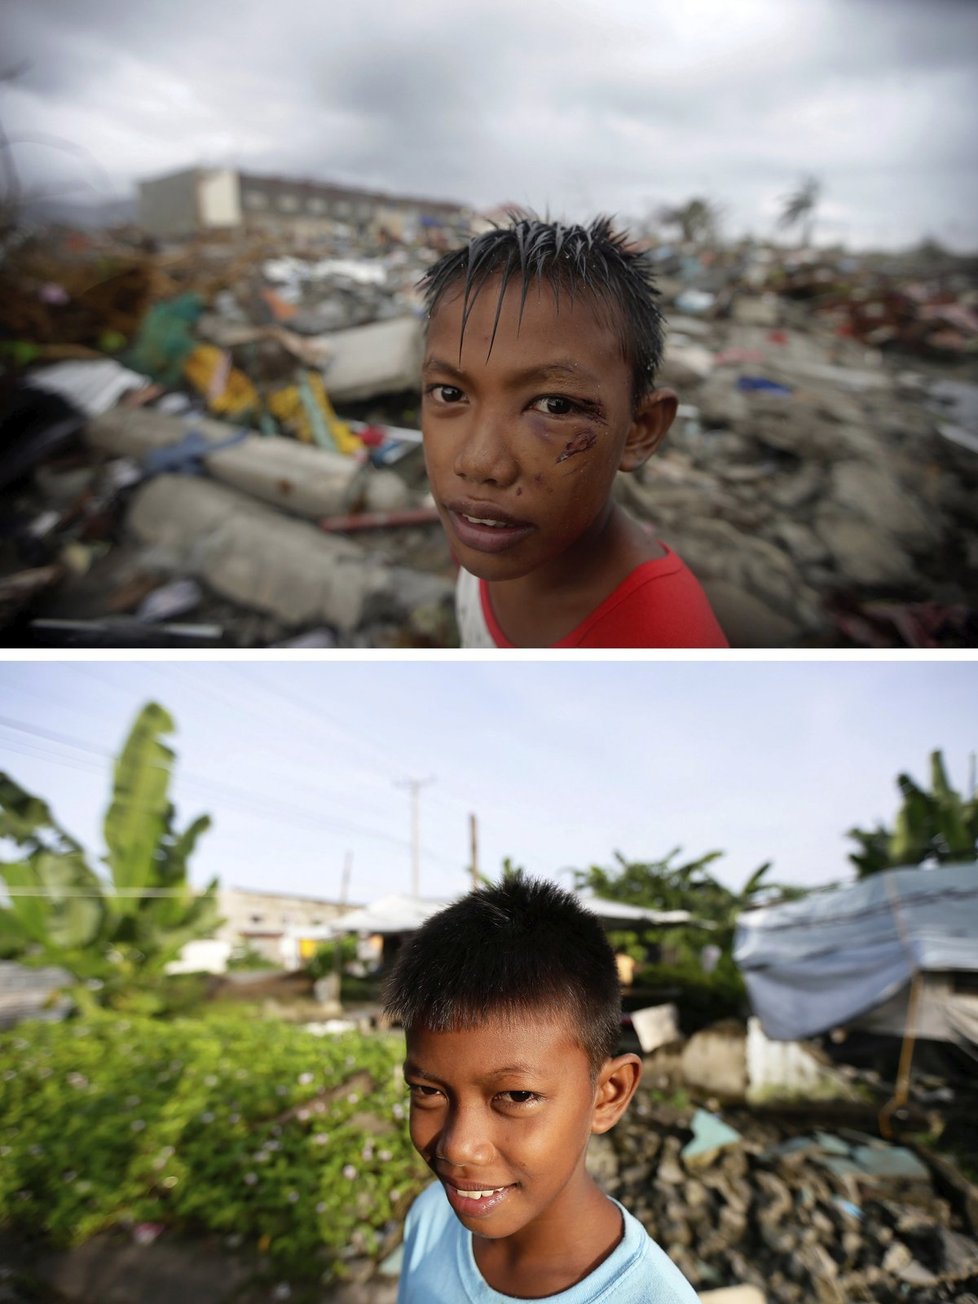 Joshua Cator (11) ztratil kvůli tajfunu 23 příbuzných včetně matky a mladší sestry. Dnes už se zase usmívá.